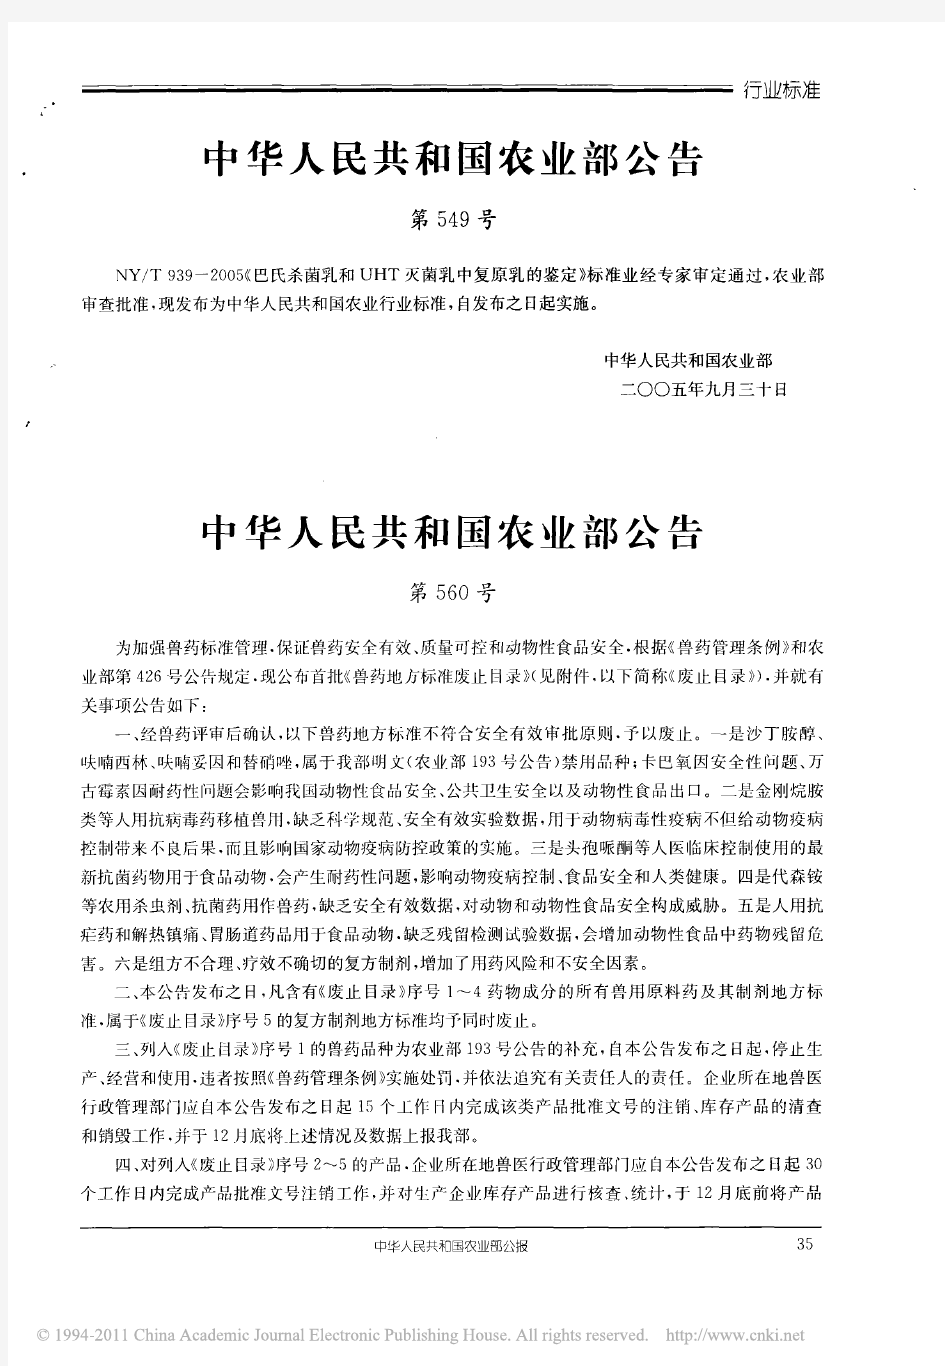 中华人民共和国农业部公告第560号